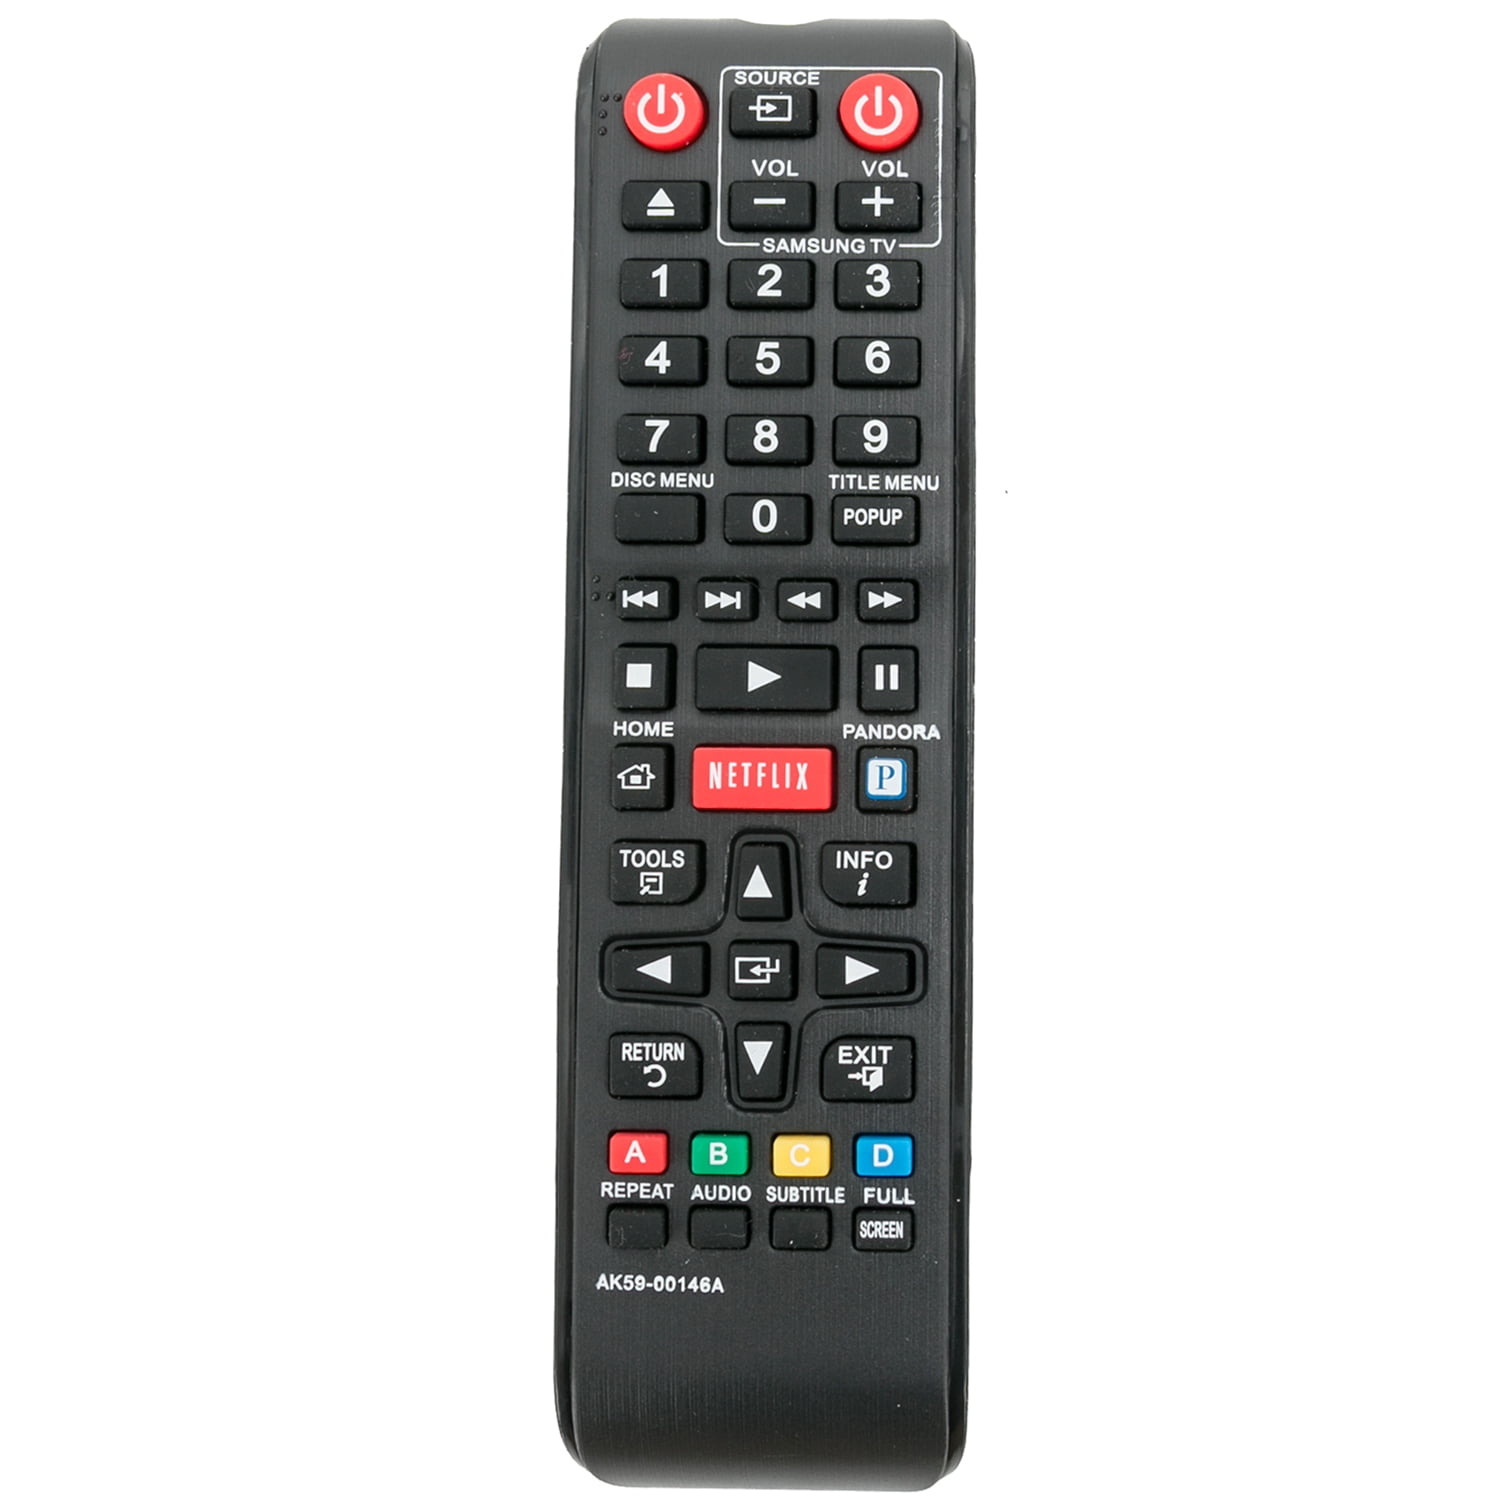 New AK59-00146A Replaced Remote Control fit for Samsung Blu-Ray DVD Player BDE5300 BD-E5300 BD-E5300/ZA BD-ES6000 BDE5400/ZA BD-E5400/ZA BDE5300ZA